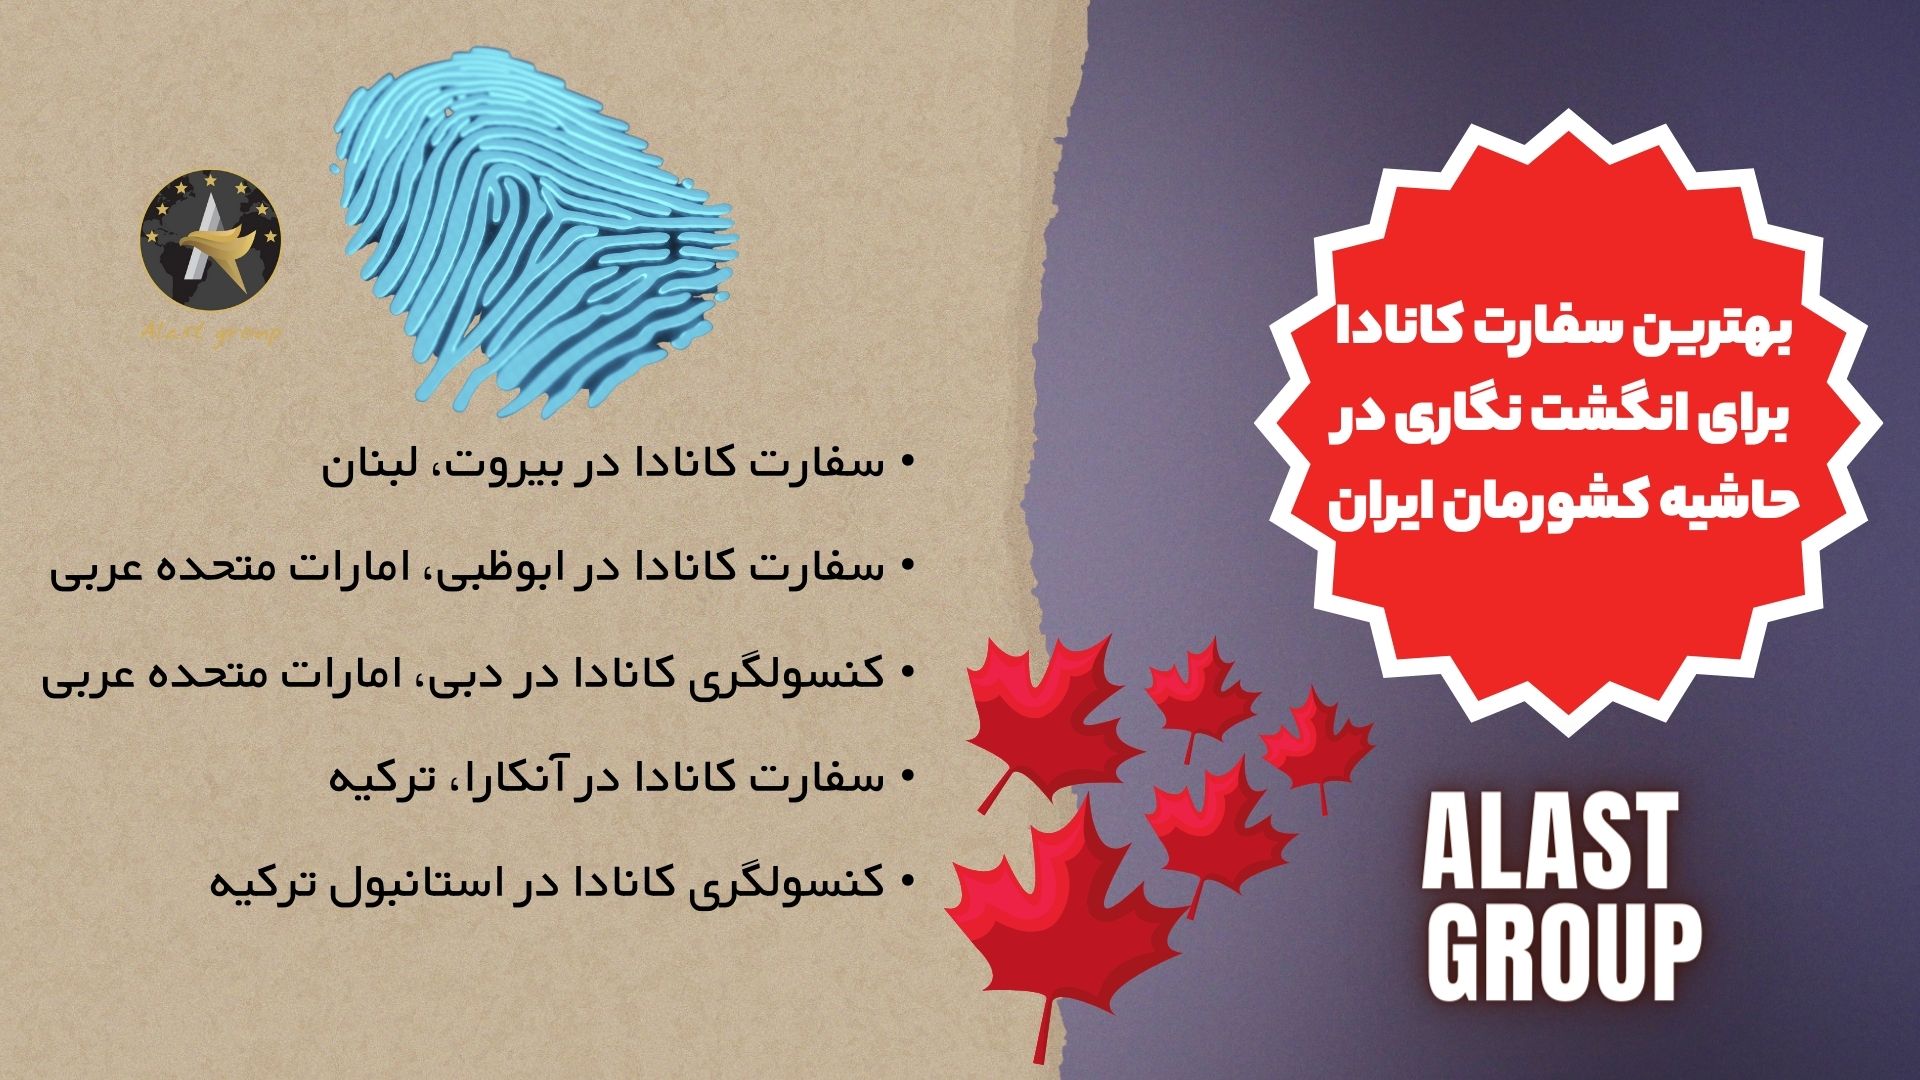 بهترین سفارت کانادا برای انگشت نگاری در حاشیه کشورمان ایران